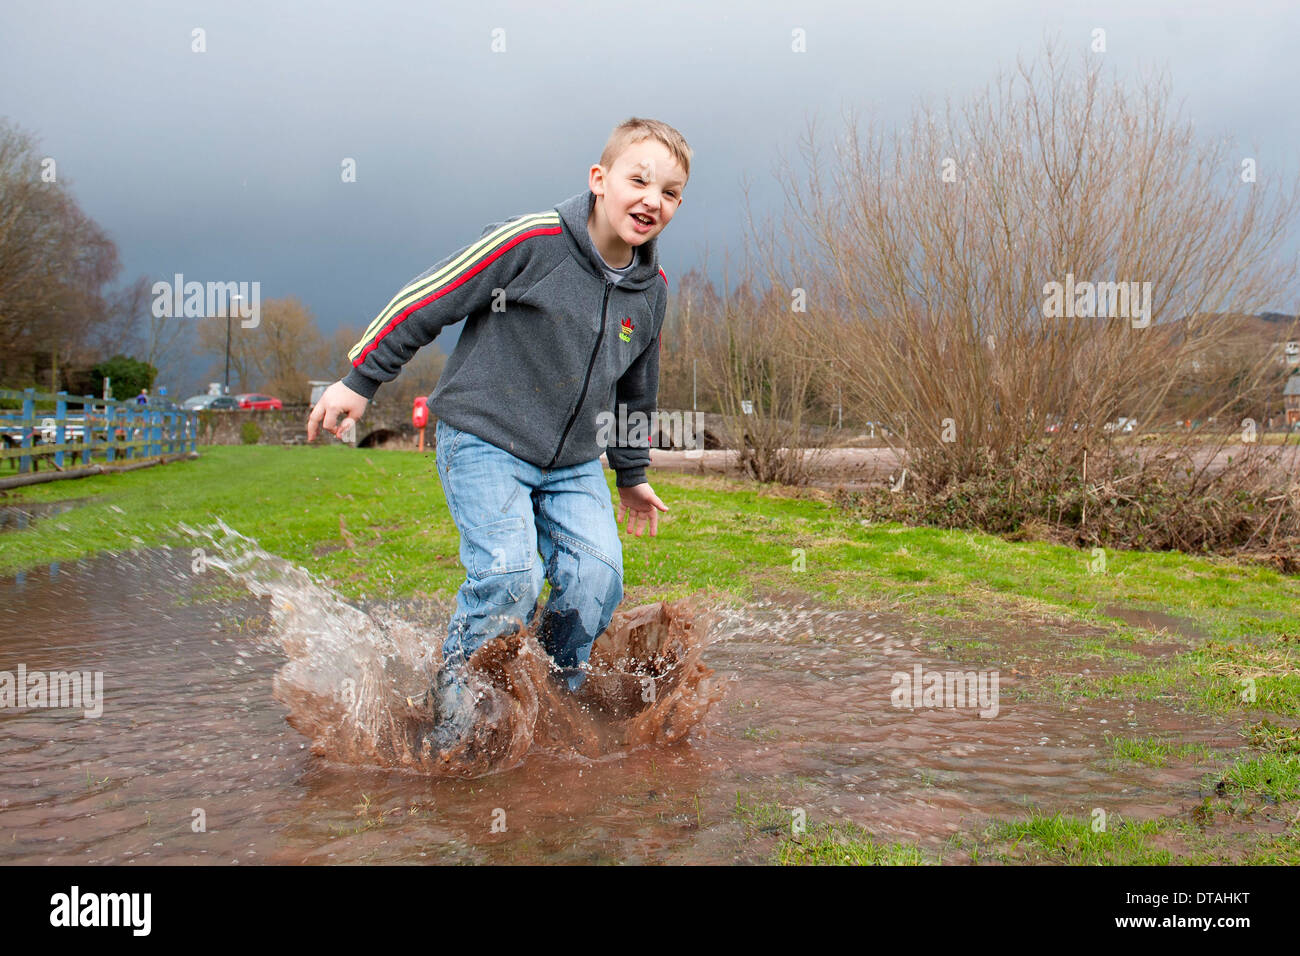 Un jeune garçon profitant du temps pluvieux de sauter dans une flaque d'eau et les projections d'eau. Banque D'Images